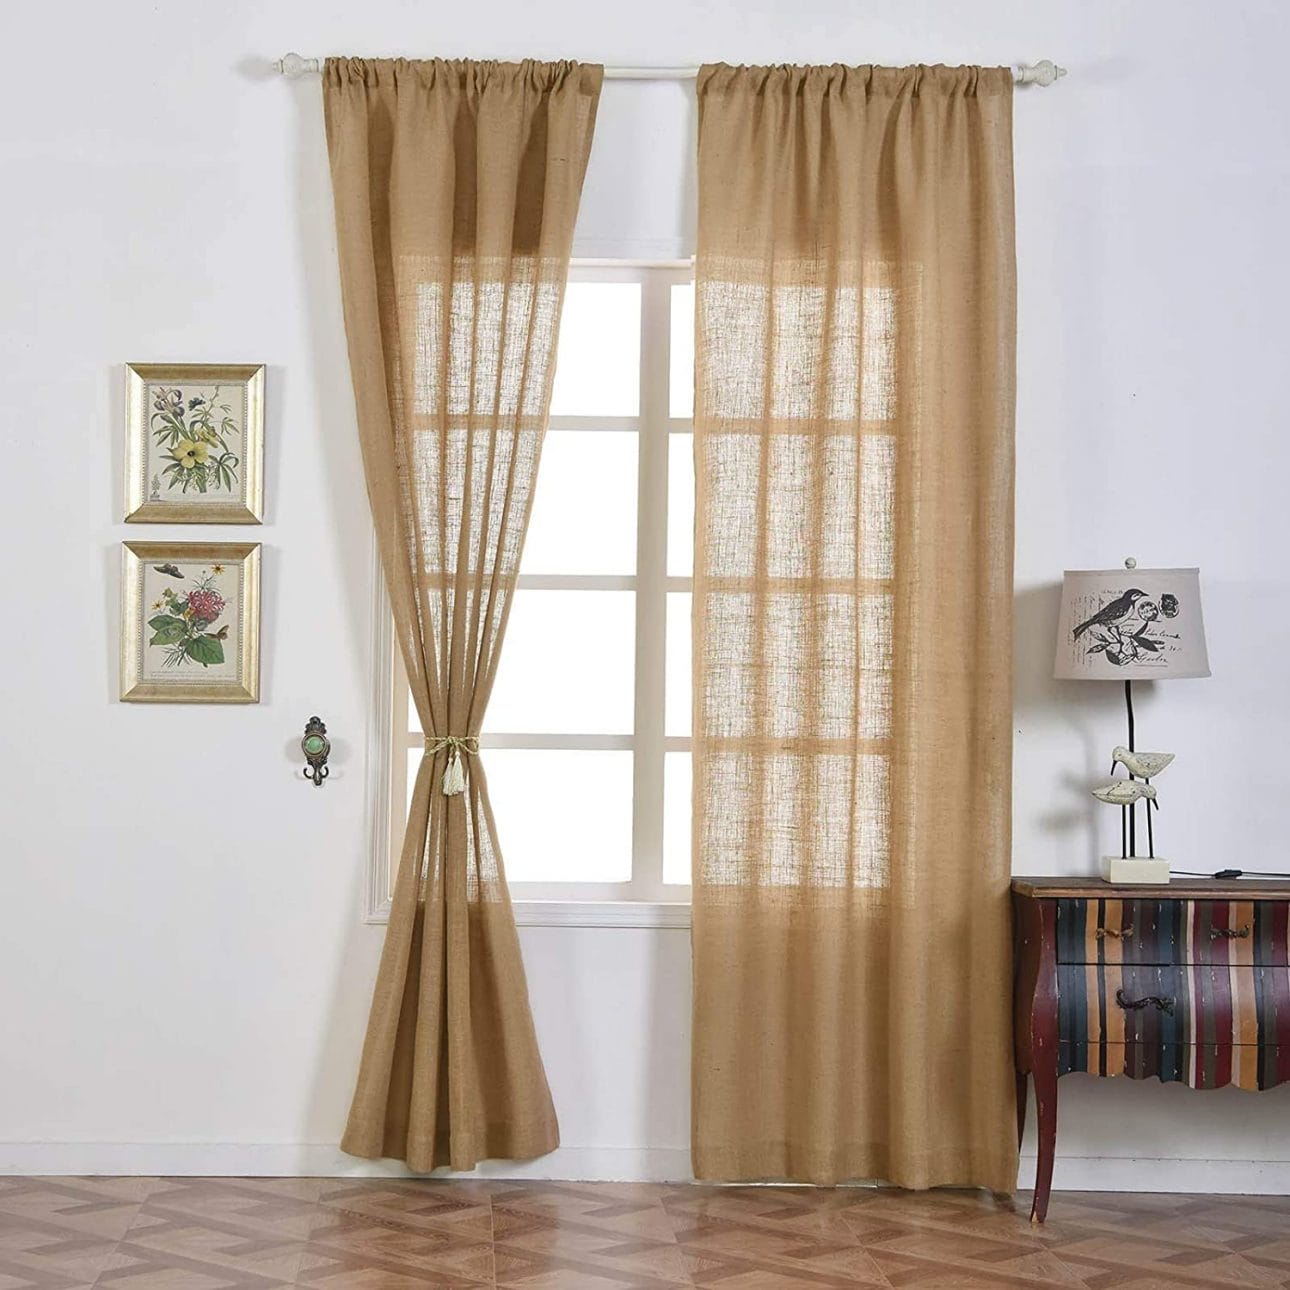 types of curtains john lewis